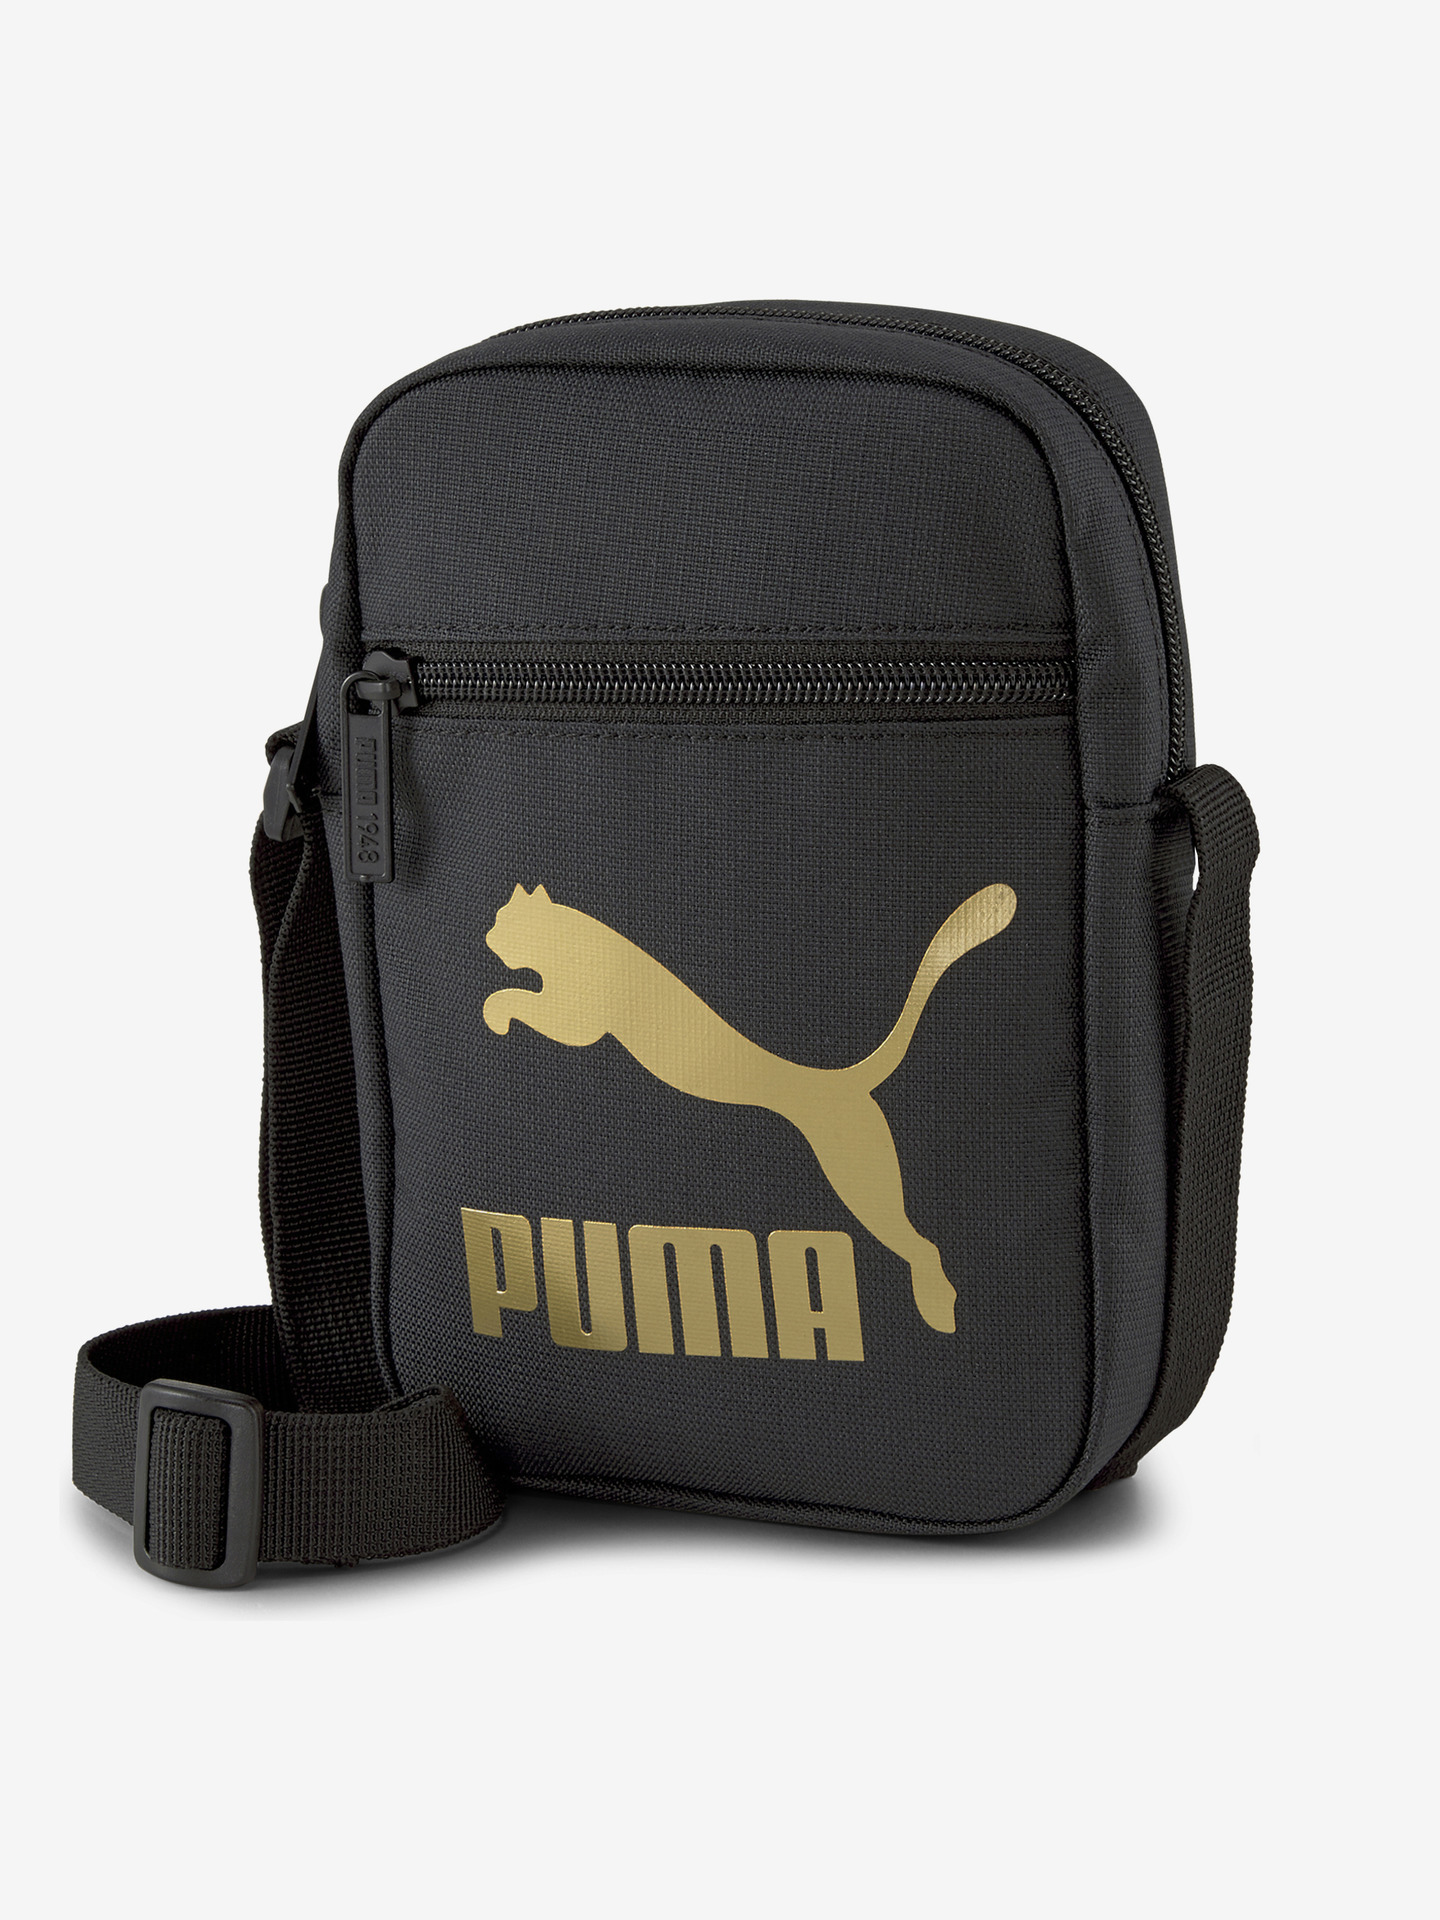 Originals Compact Portable Cross body bag Puma Černá Puma